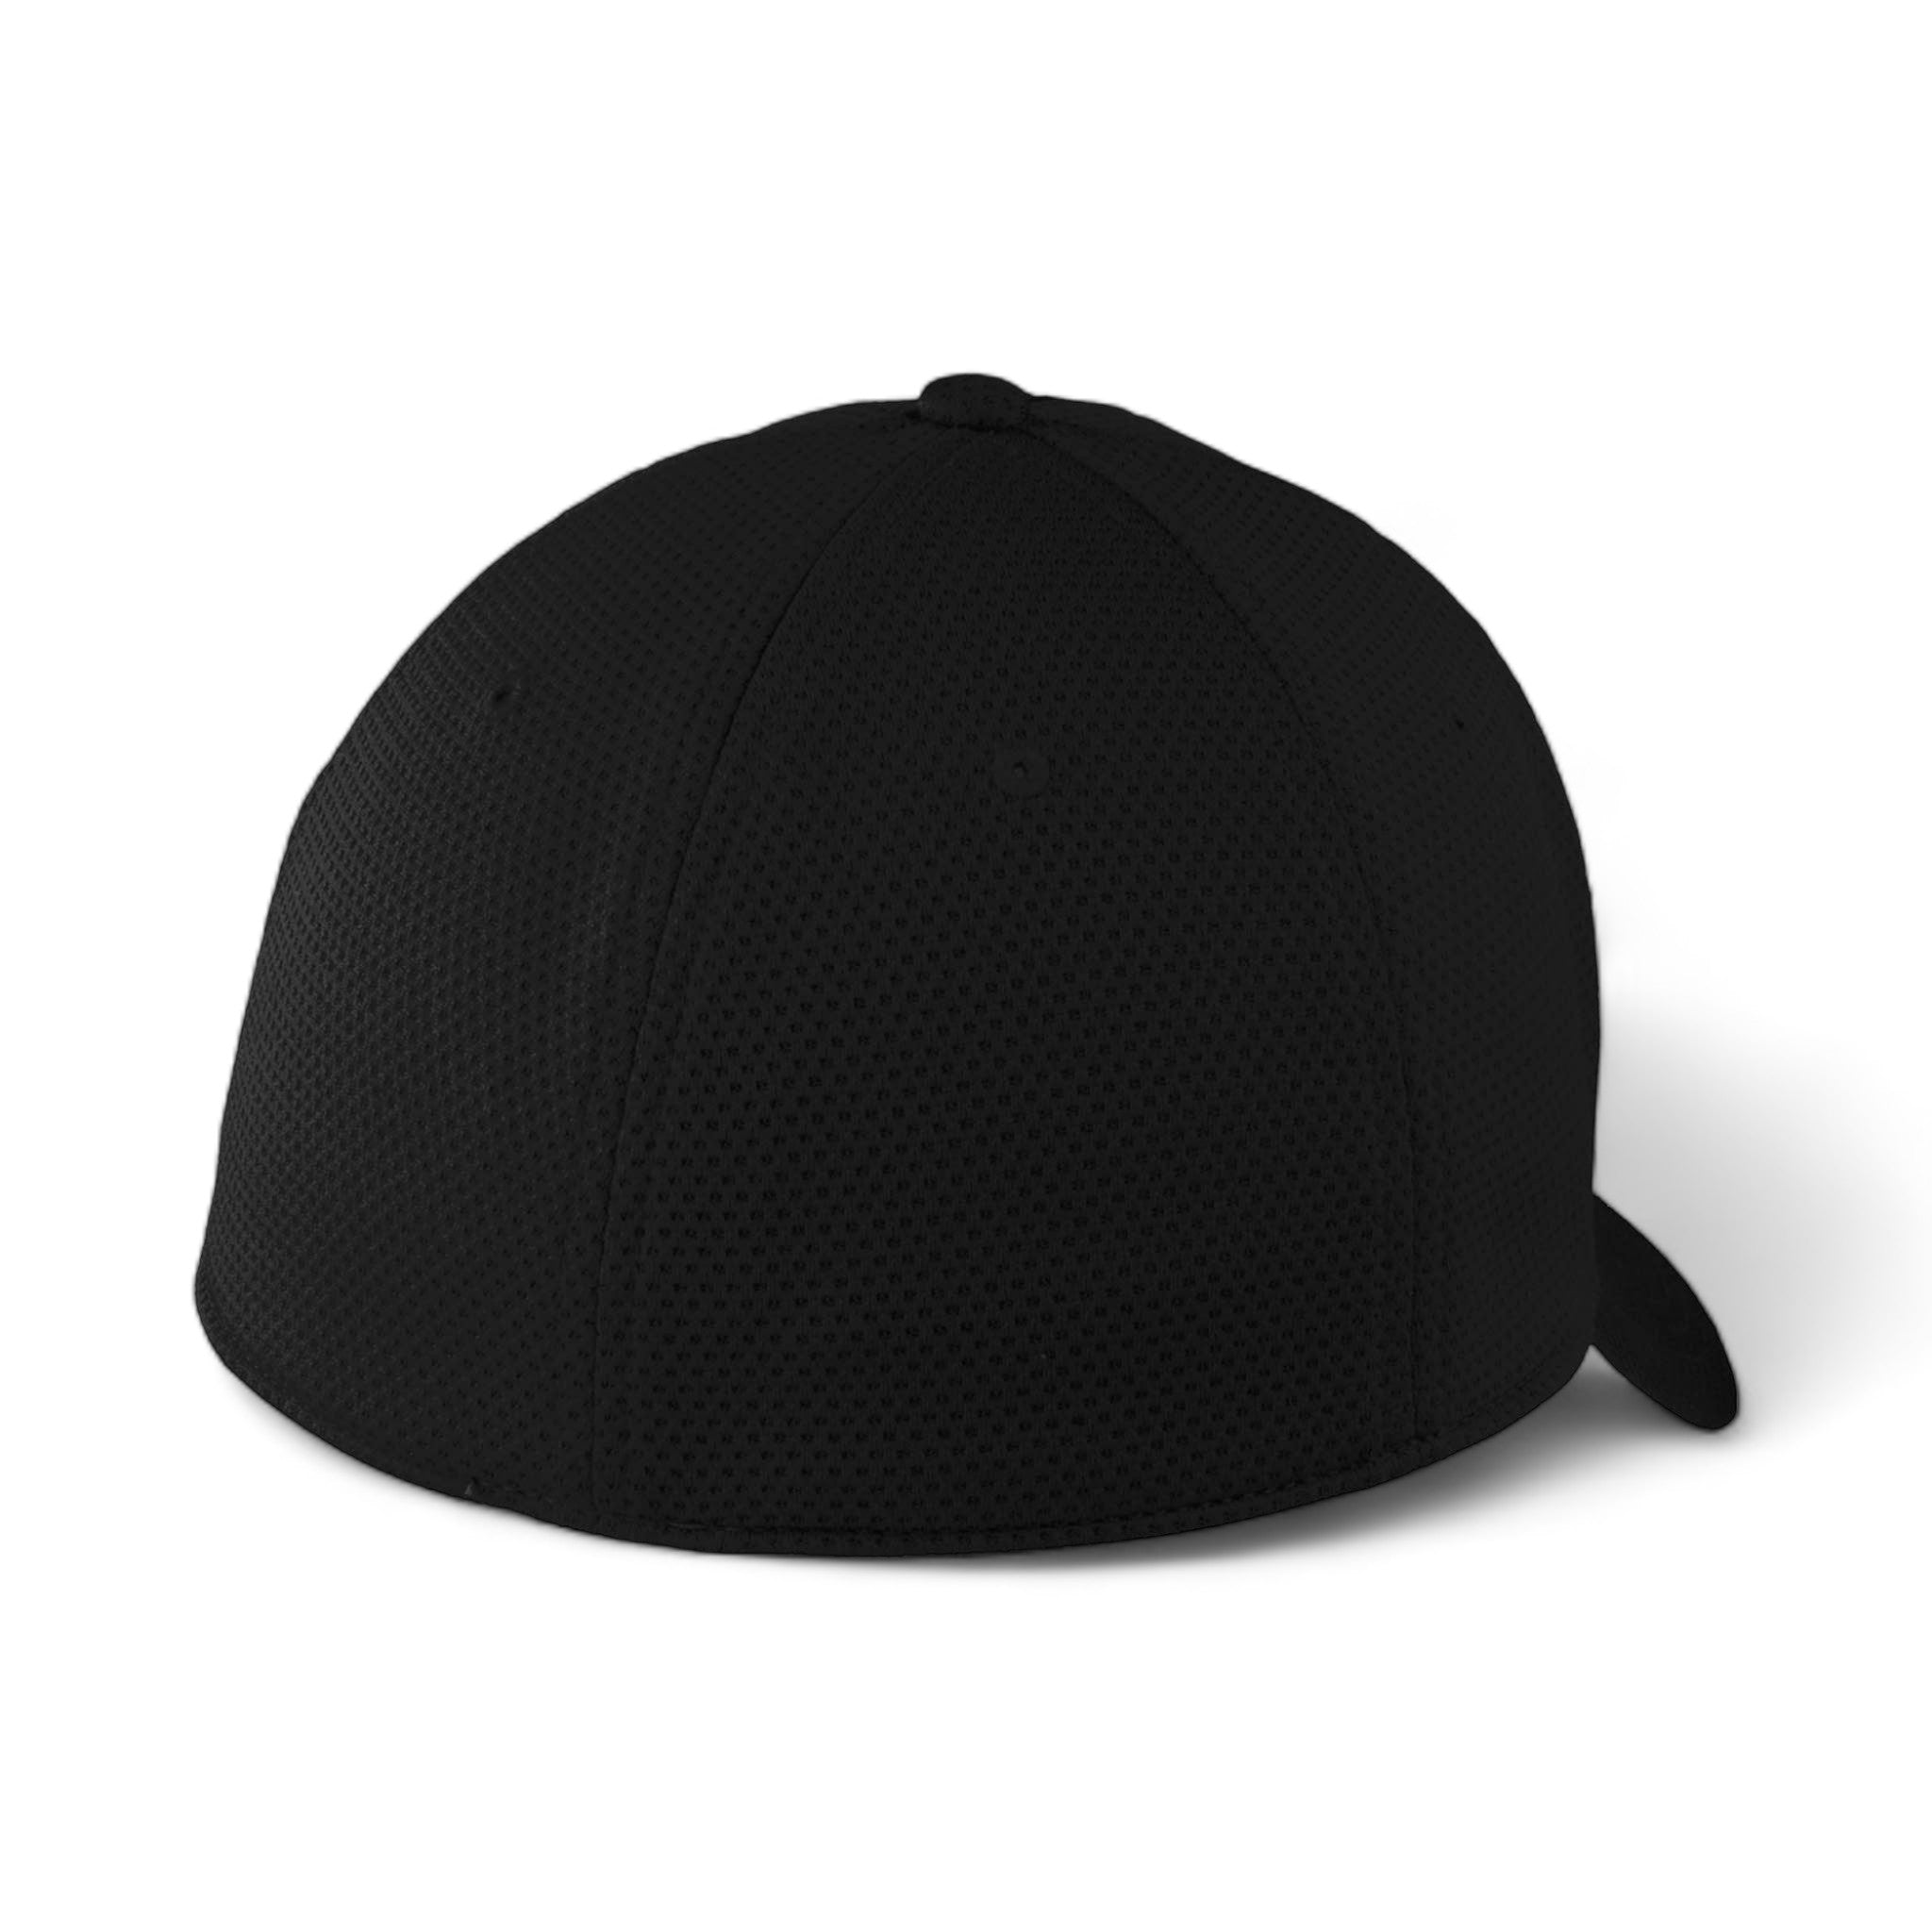 Back view of New Era NE1090 custom hat in black